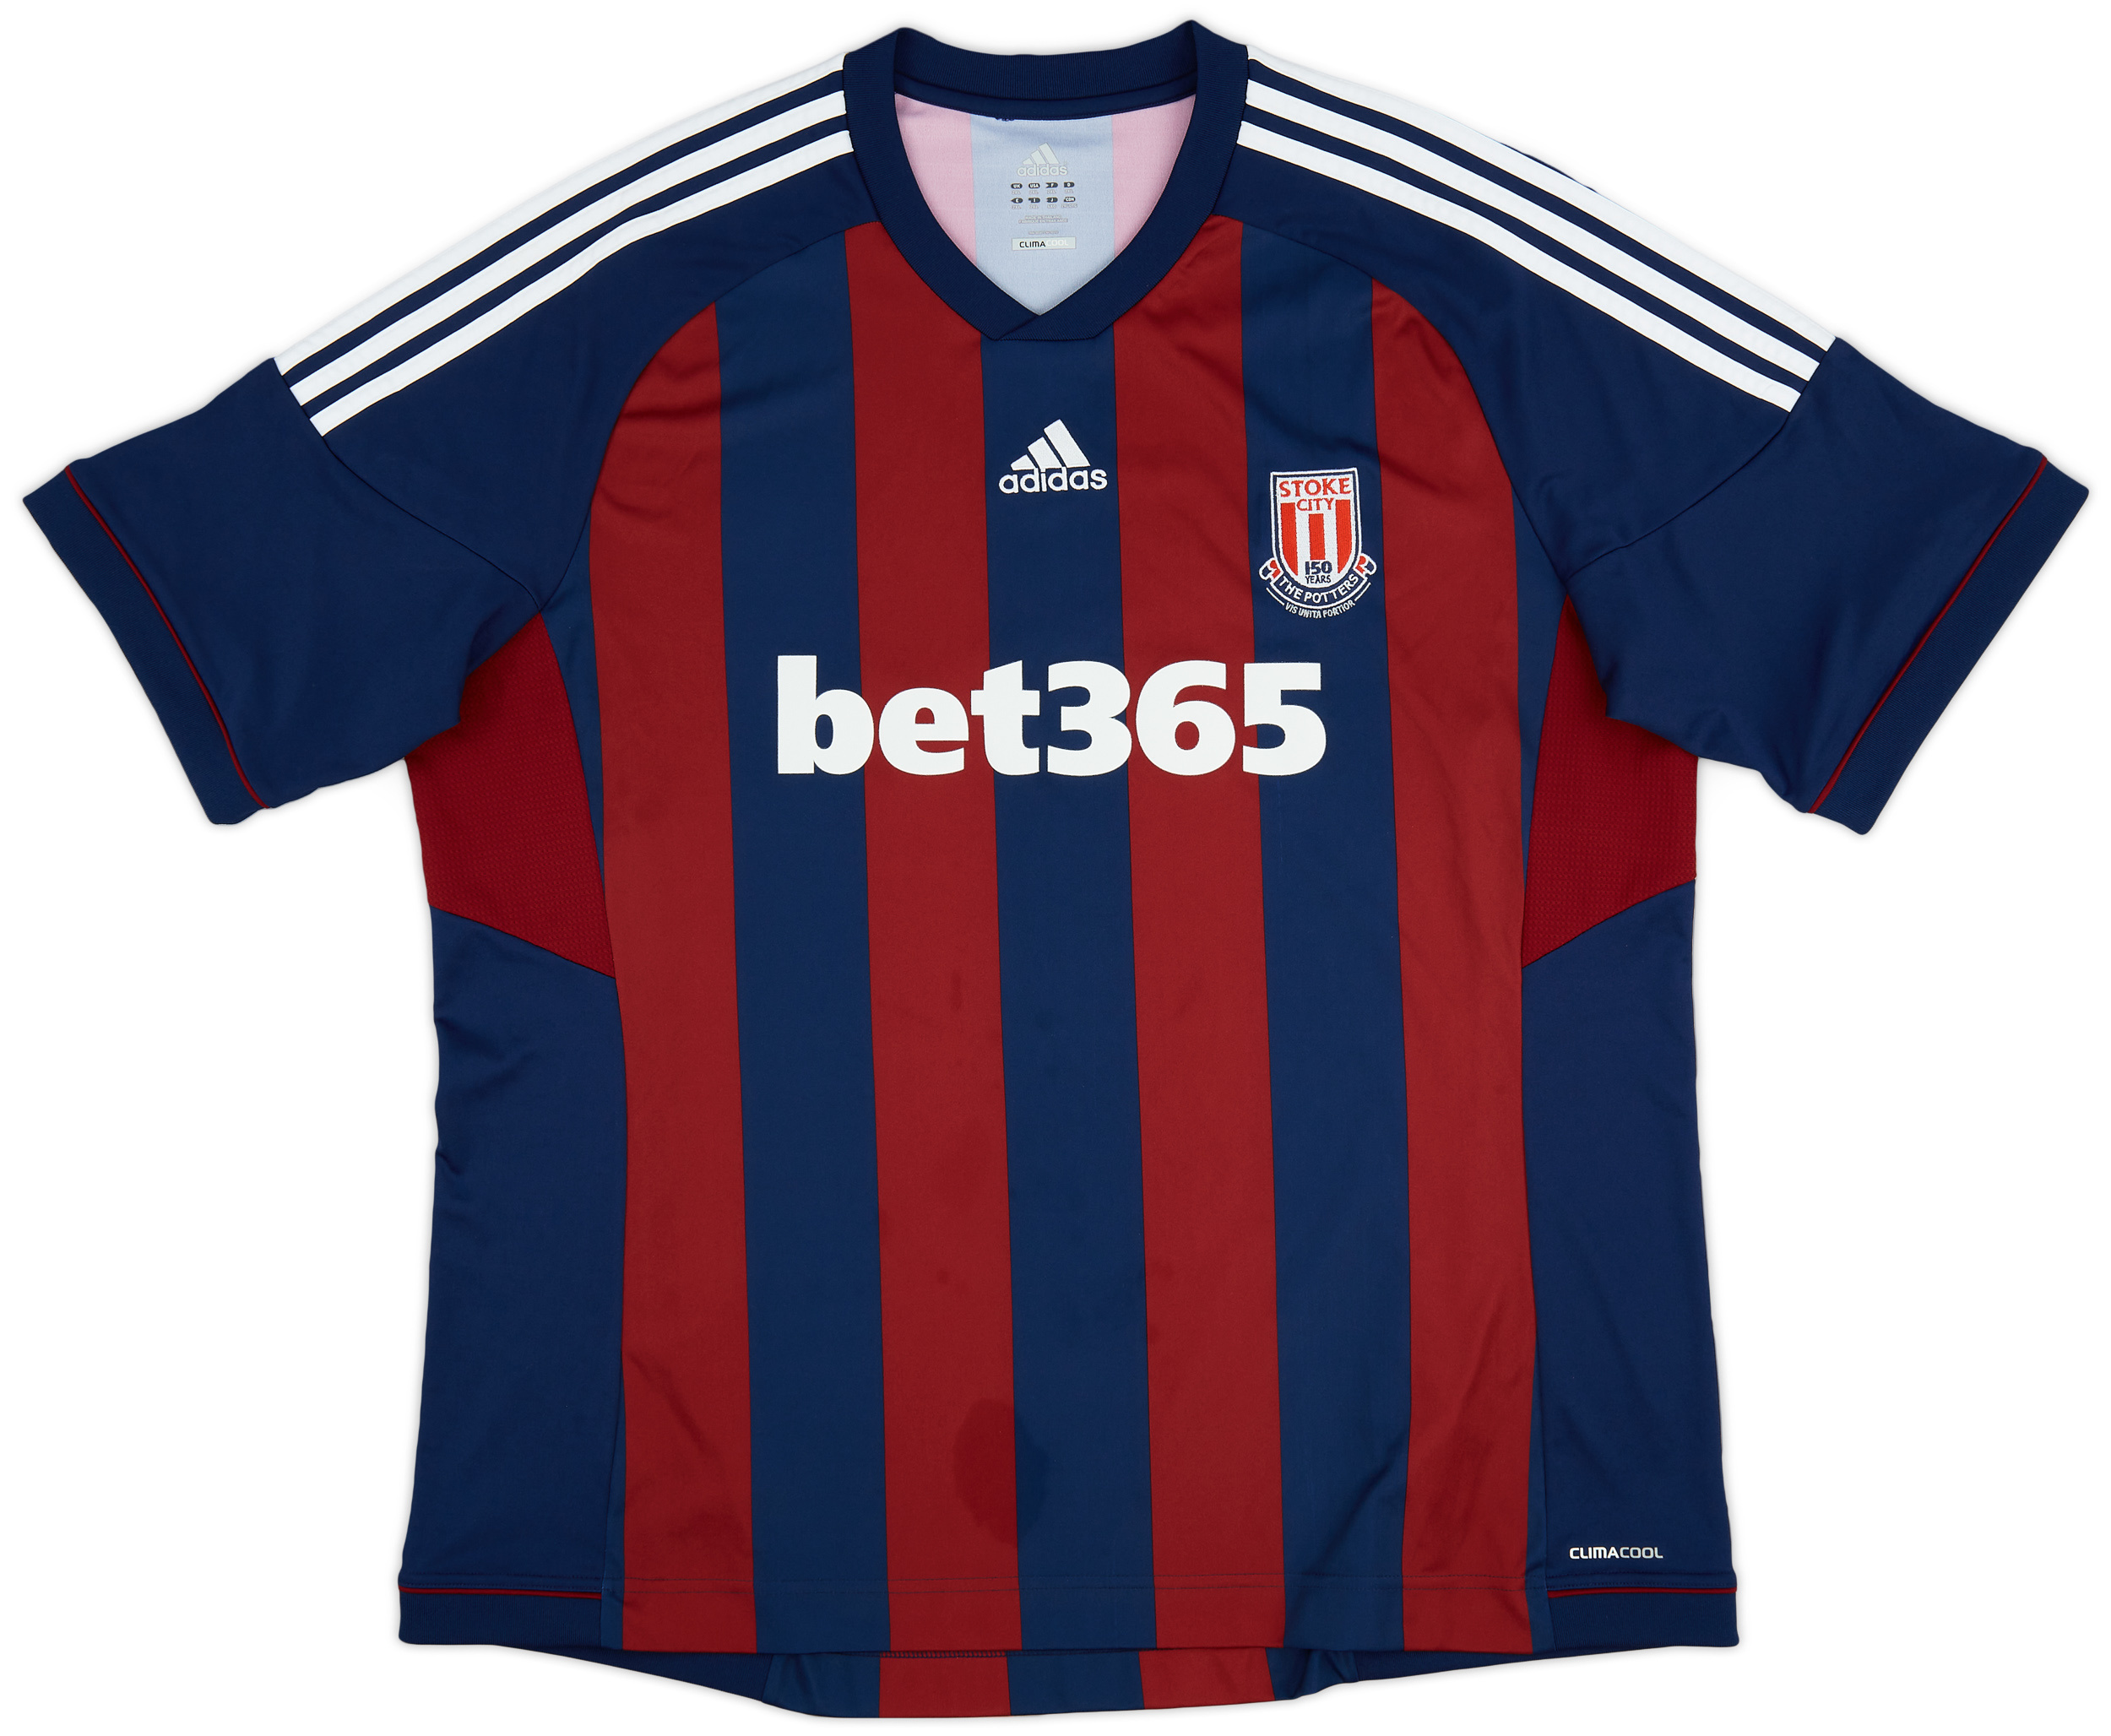 2012-13 Stoke City '150 Years' Away Shirt - 8/10 - ()